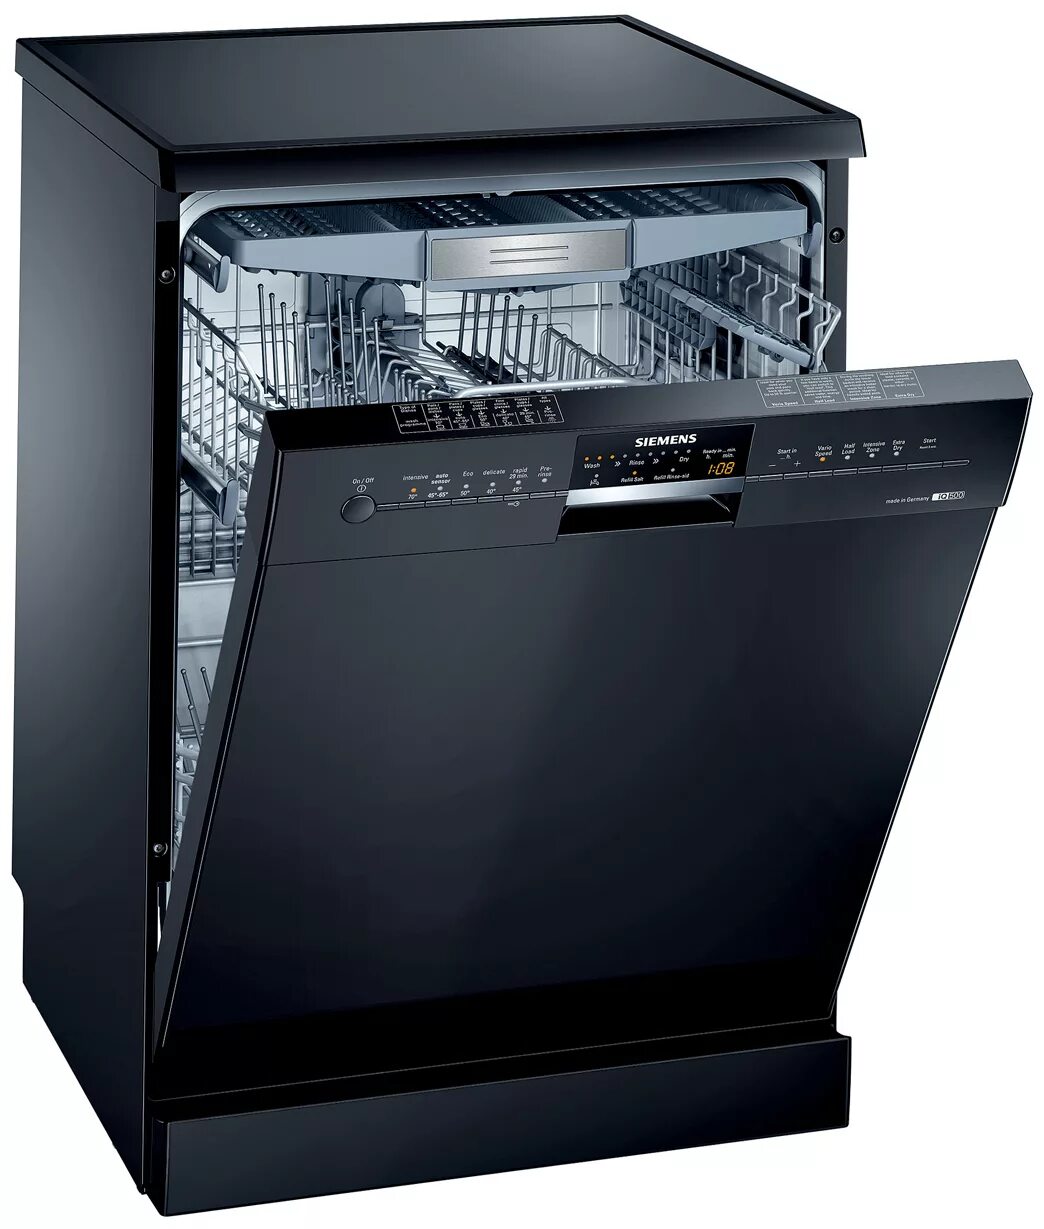 Посудомоечная машина Siemens SN 25m888. Siemens 500 посудомоечная машина. Siemens посудомоечная машина sn44d201sk/34. Посудомойка Борк встраиваемая. Где можно купить посудомоечная